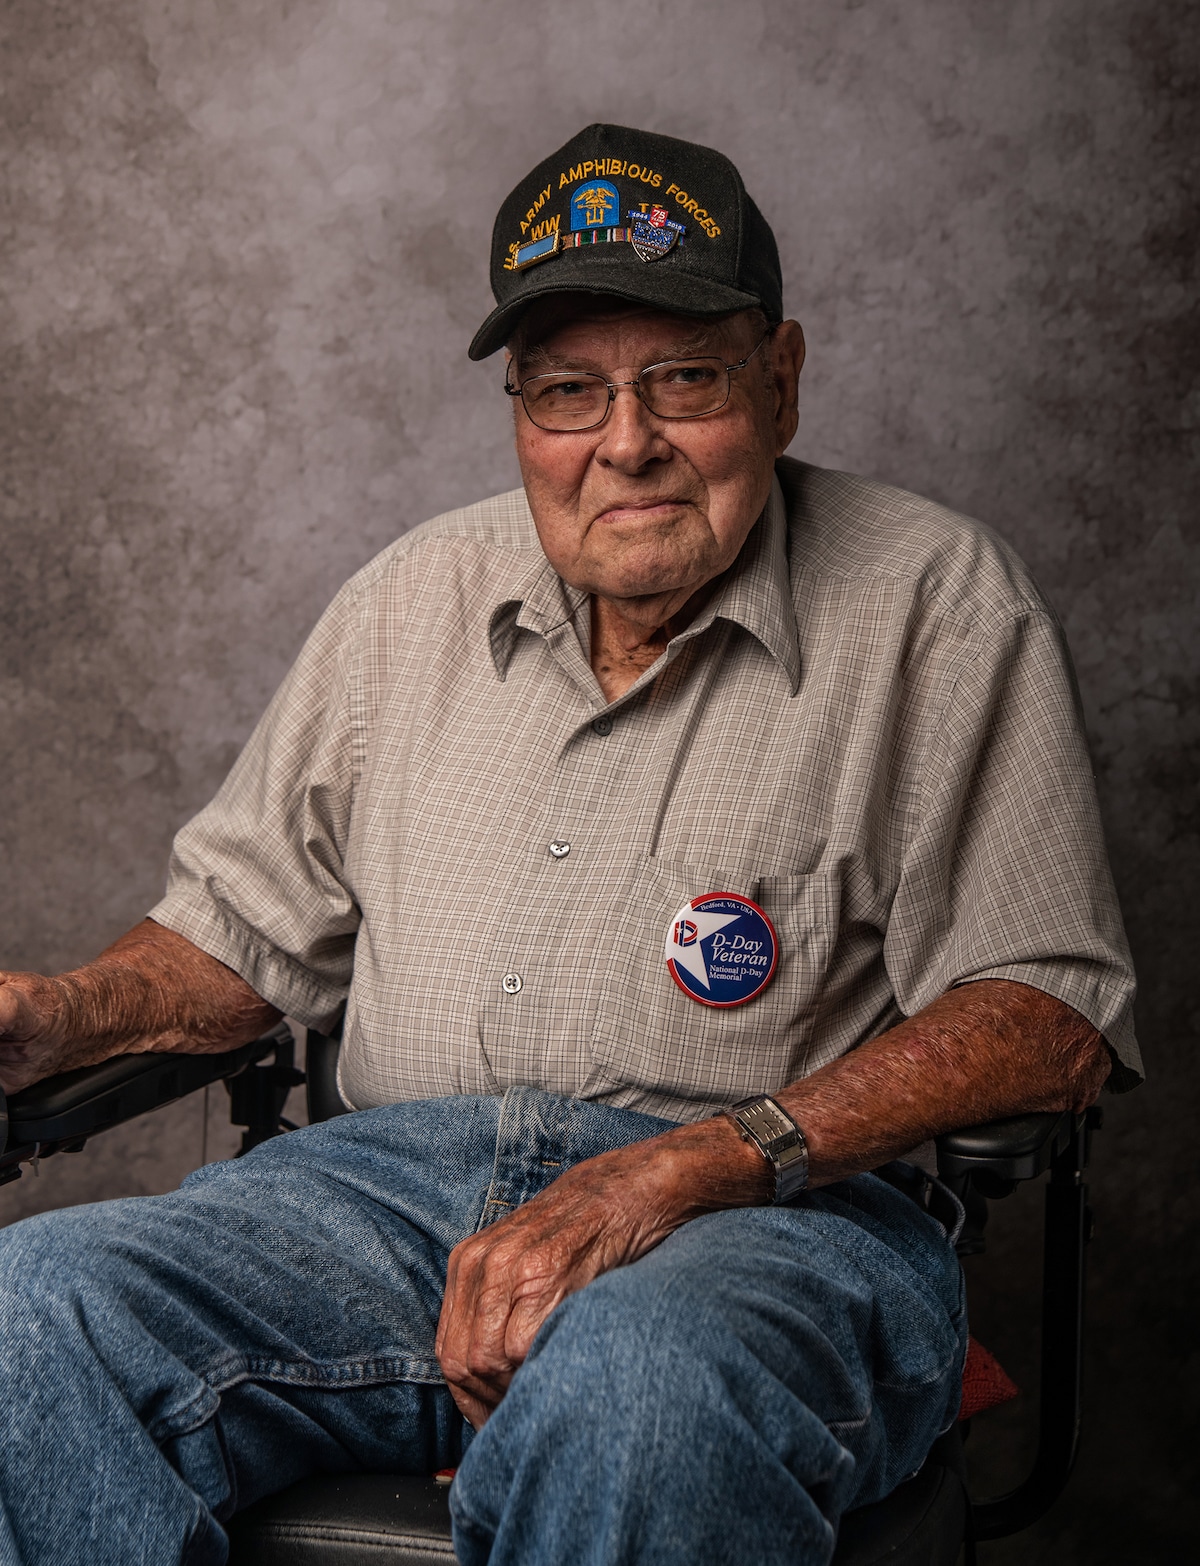 Portraits of World War II Veterans by Jeffrey Rease